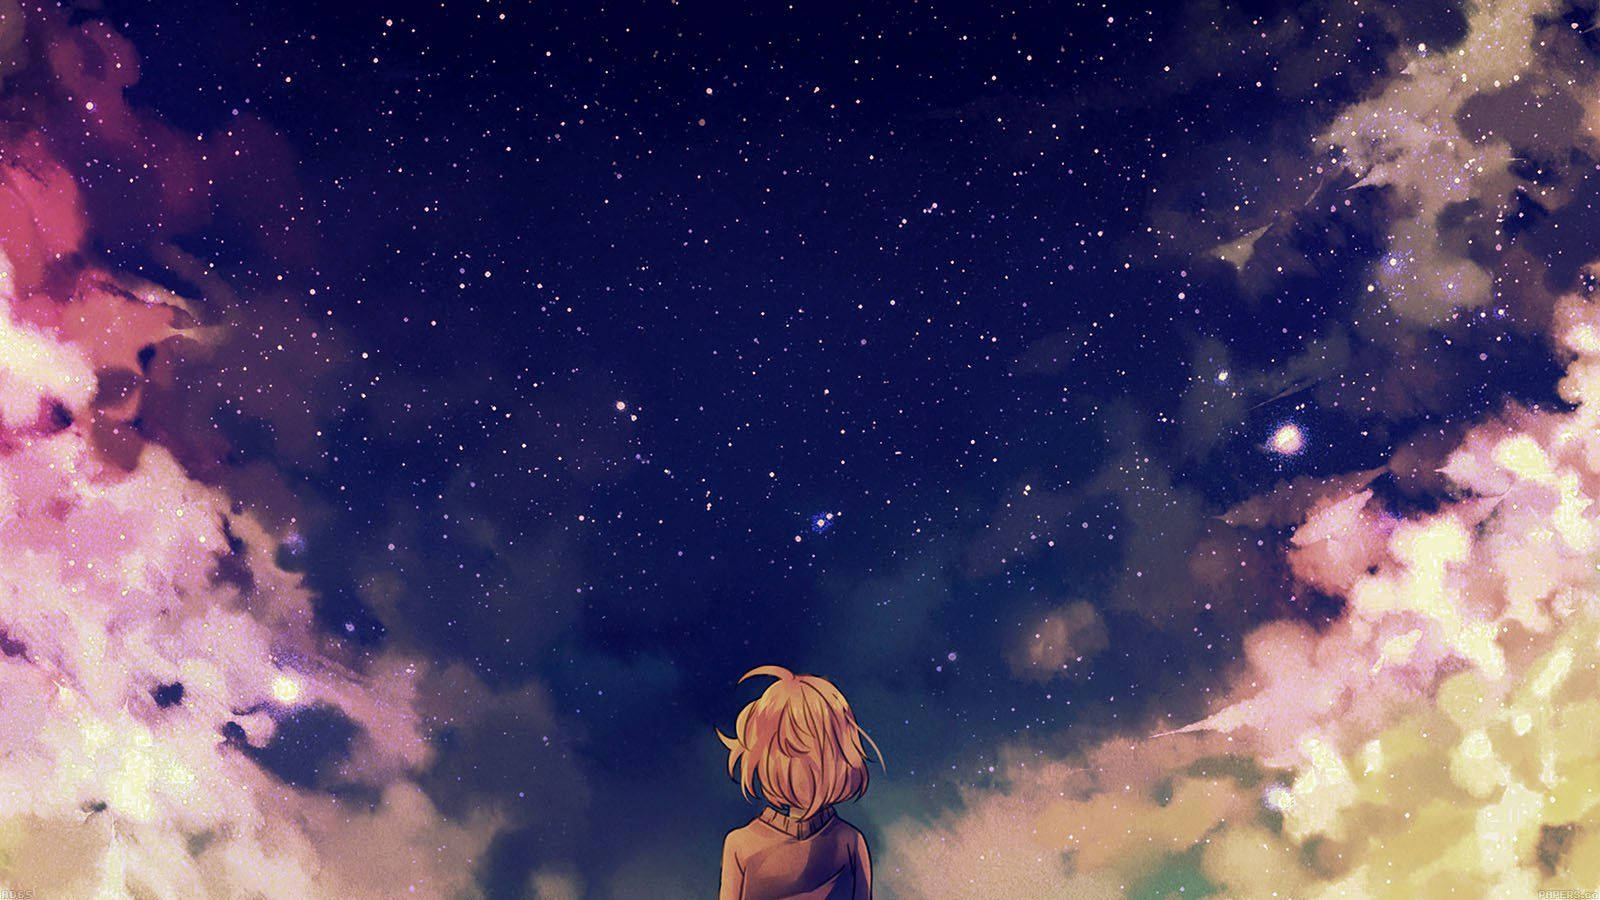 Anime Girl Stargazing in the Night Sky Wallpaper